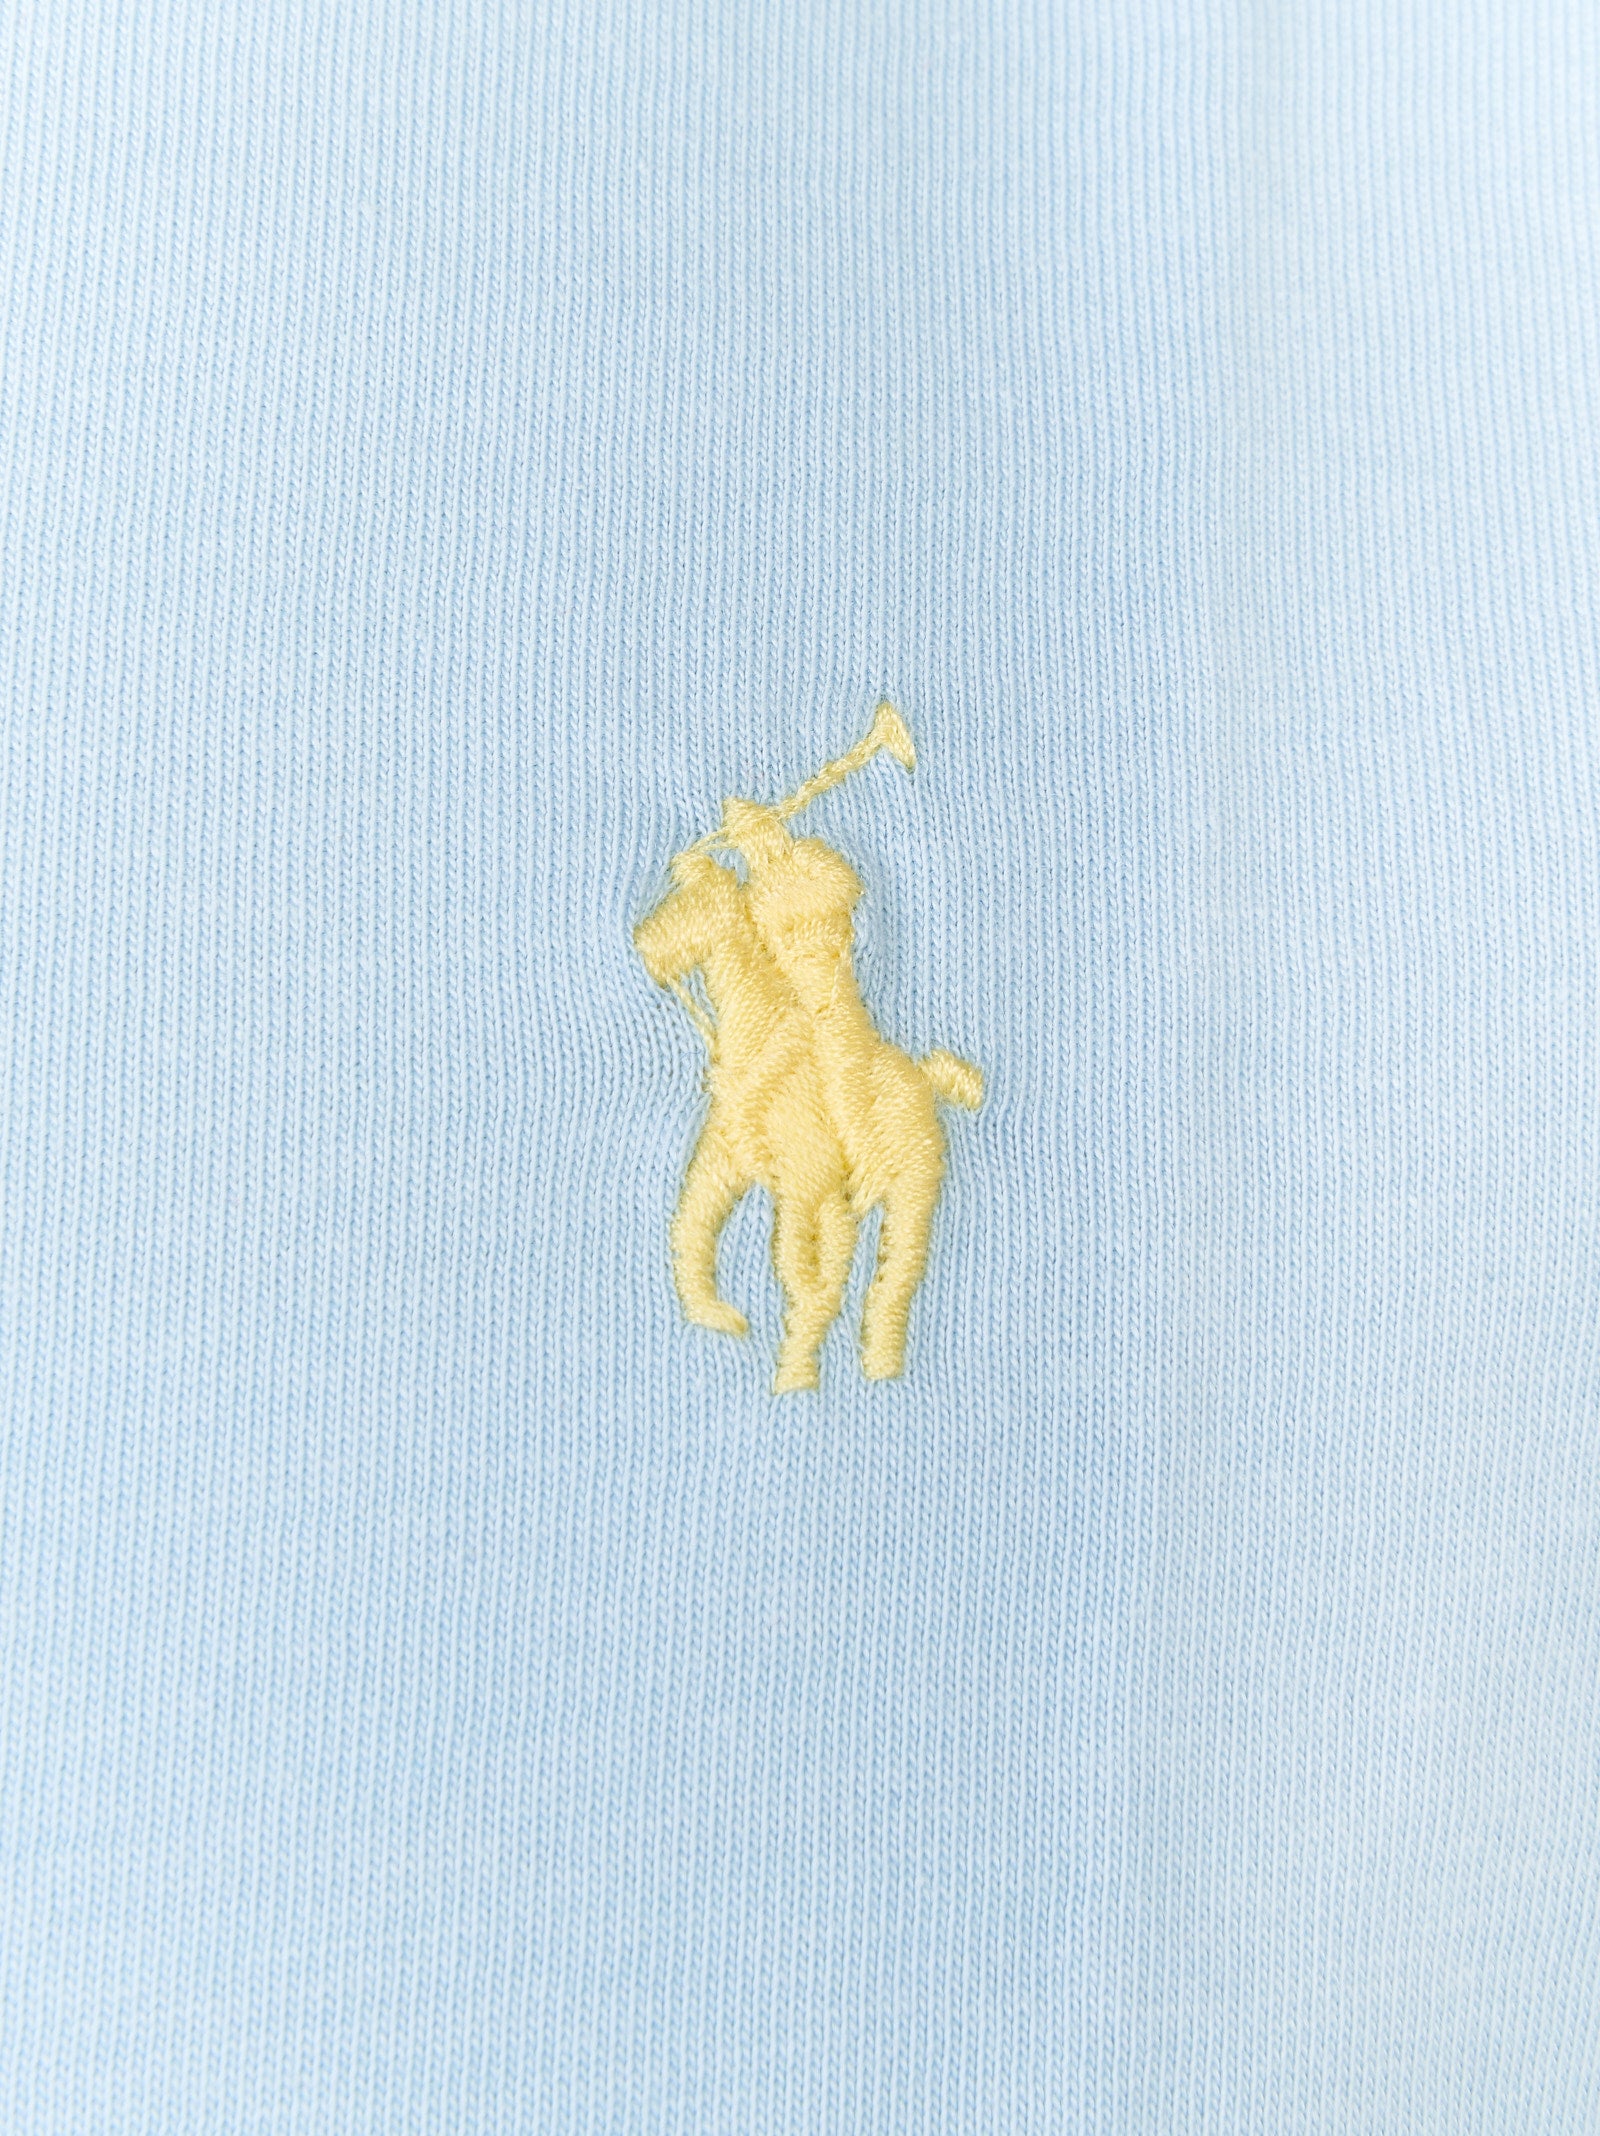 T-shirt POLO RALPH LAUREN
Alpine blue